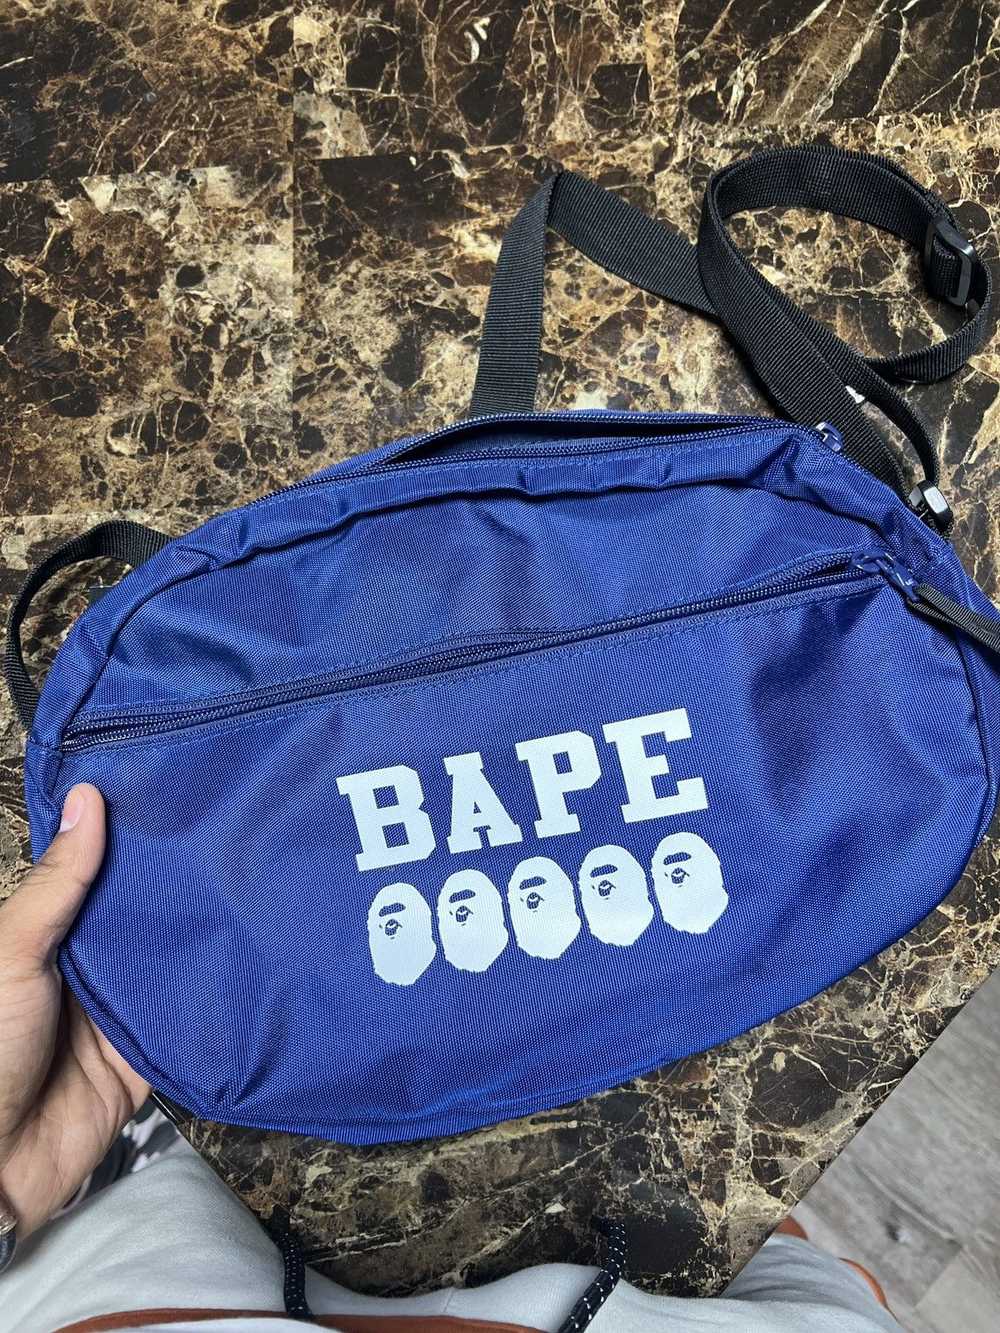 Bape Bape Go Summer Bag - image 2